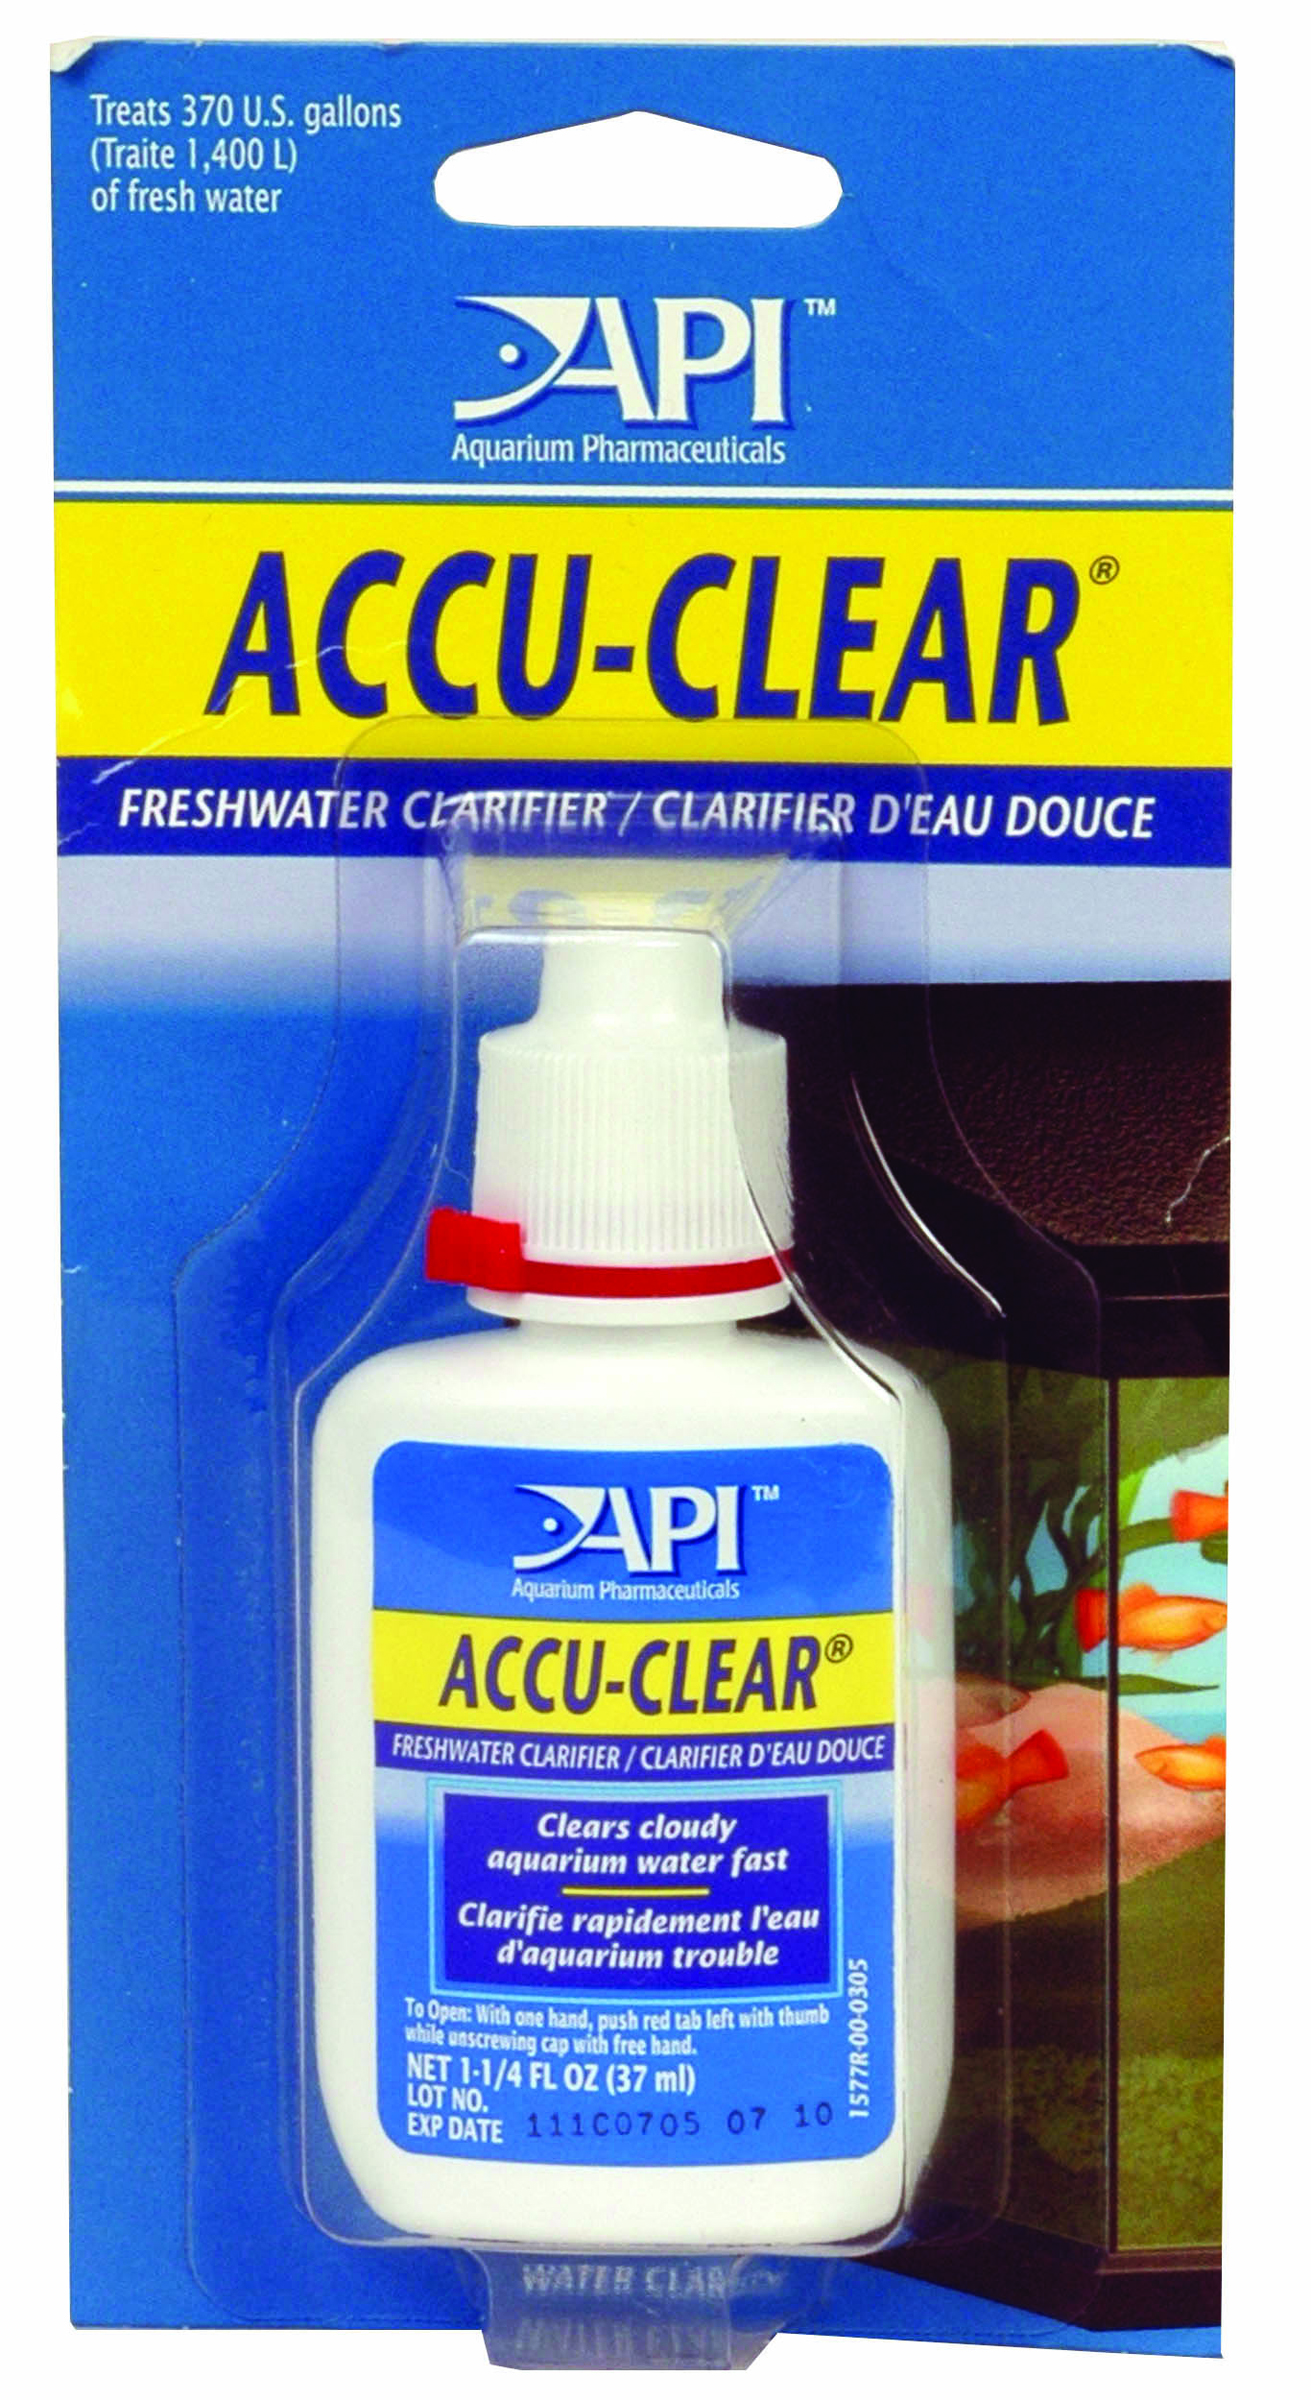 ACCU-CLEAR AQUARIUM